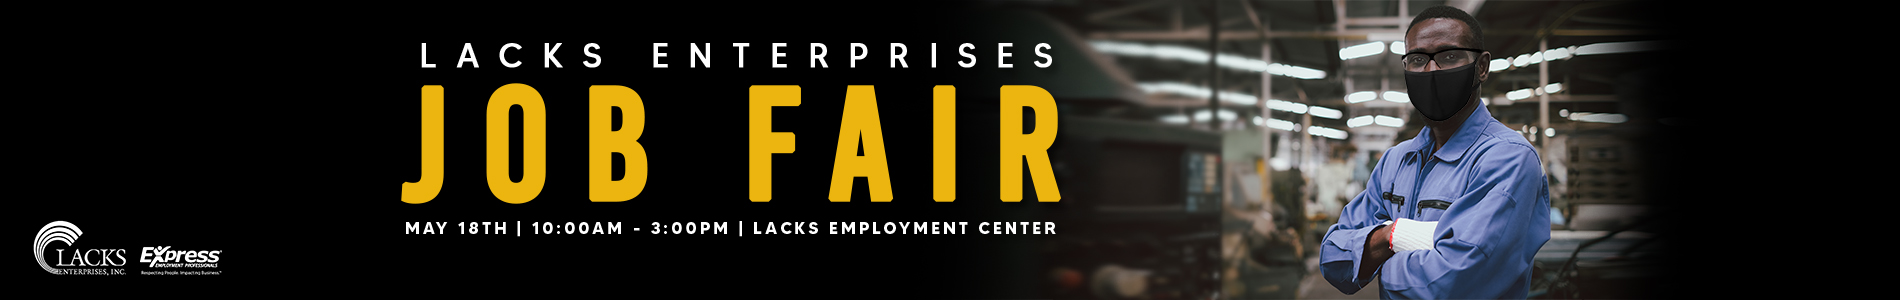 Lacks Enterprises Job Fair Grand Rapids MI 5.18